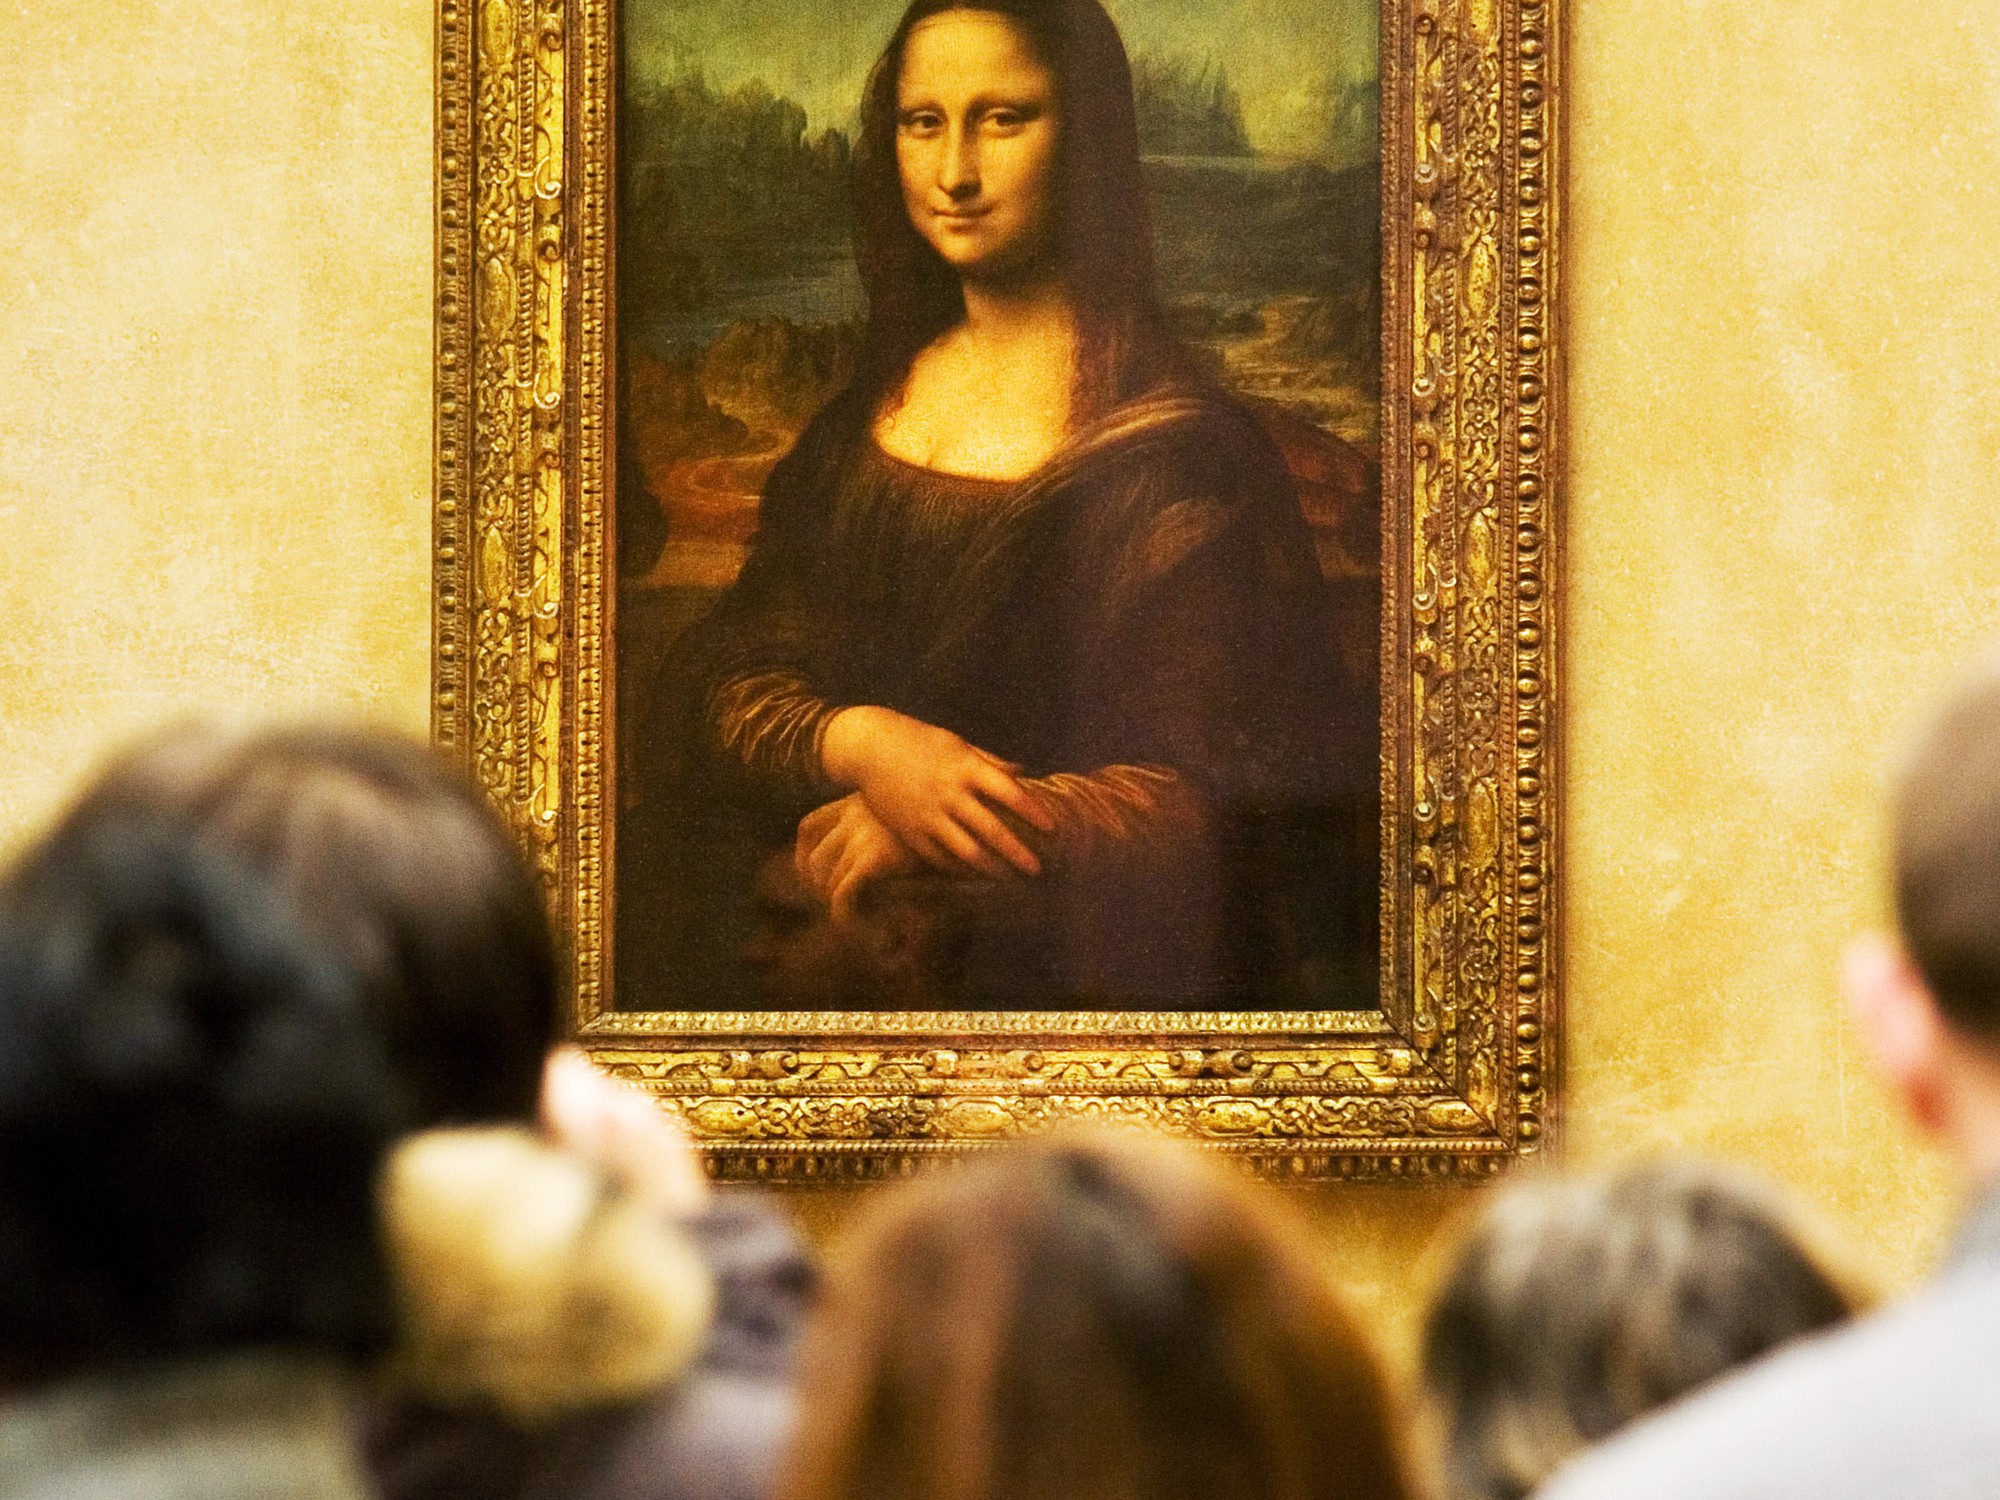 Hiệu ứng giải mã Mona Lisa sẽ cho bạn thấy những chi tiết hình ảnh bí ẩn không thể nhận ra bằng mắt thường. Cùng chiêm ngưỡng và phân tích bức tranh vô giá này!